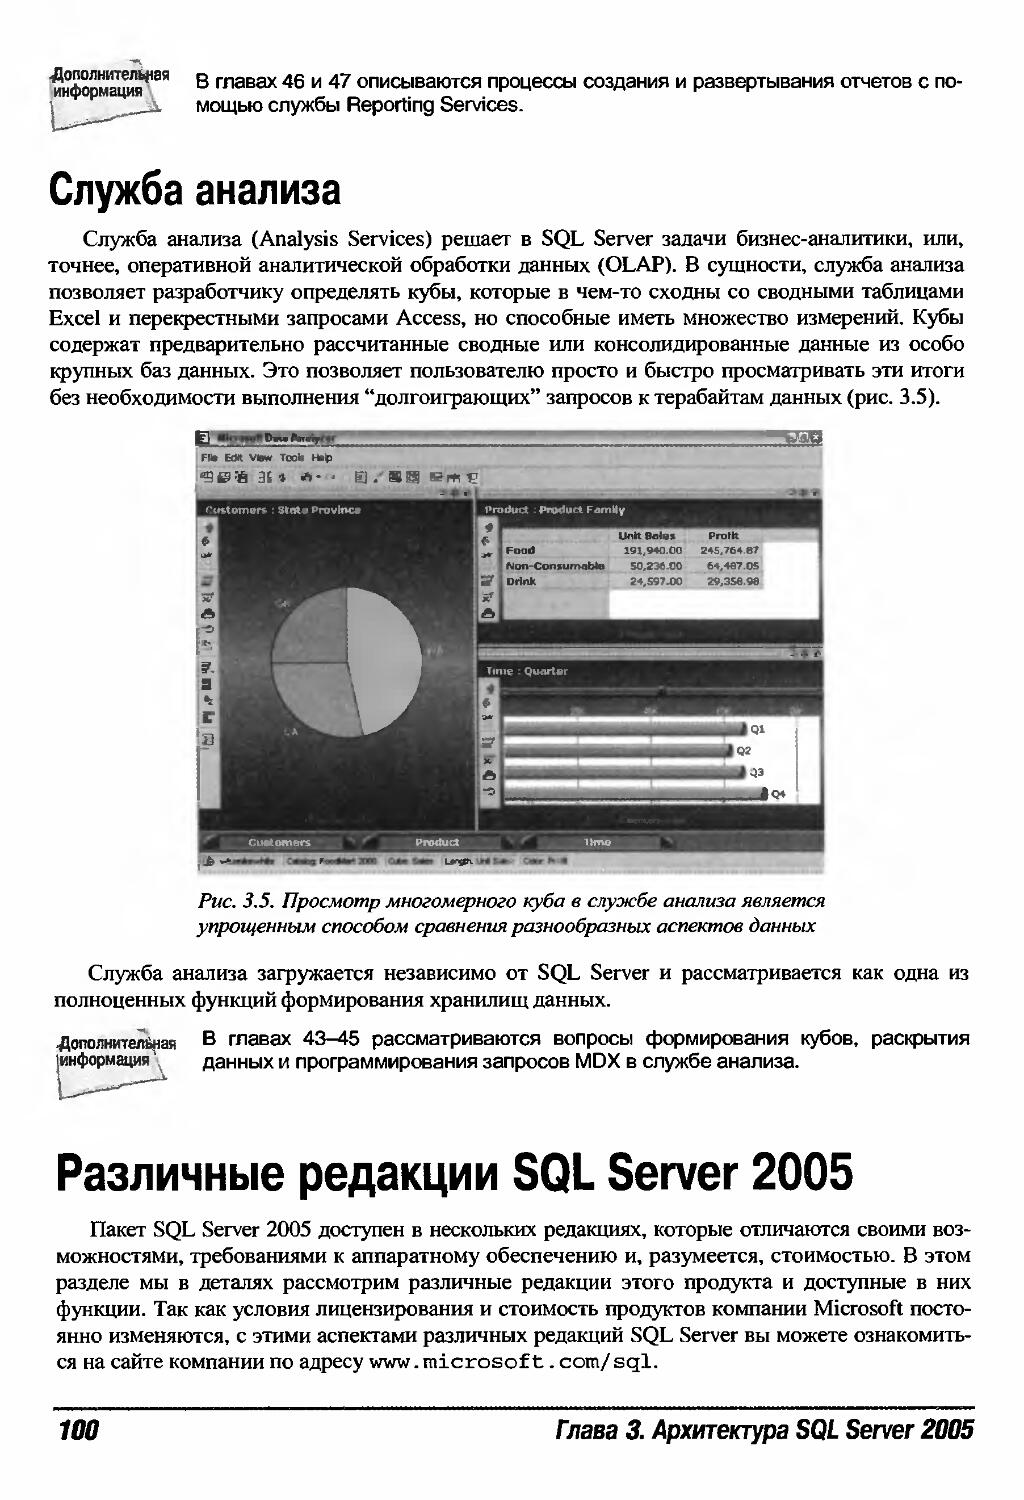 Различные редакции SQL Server 2005